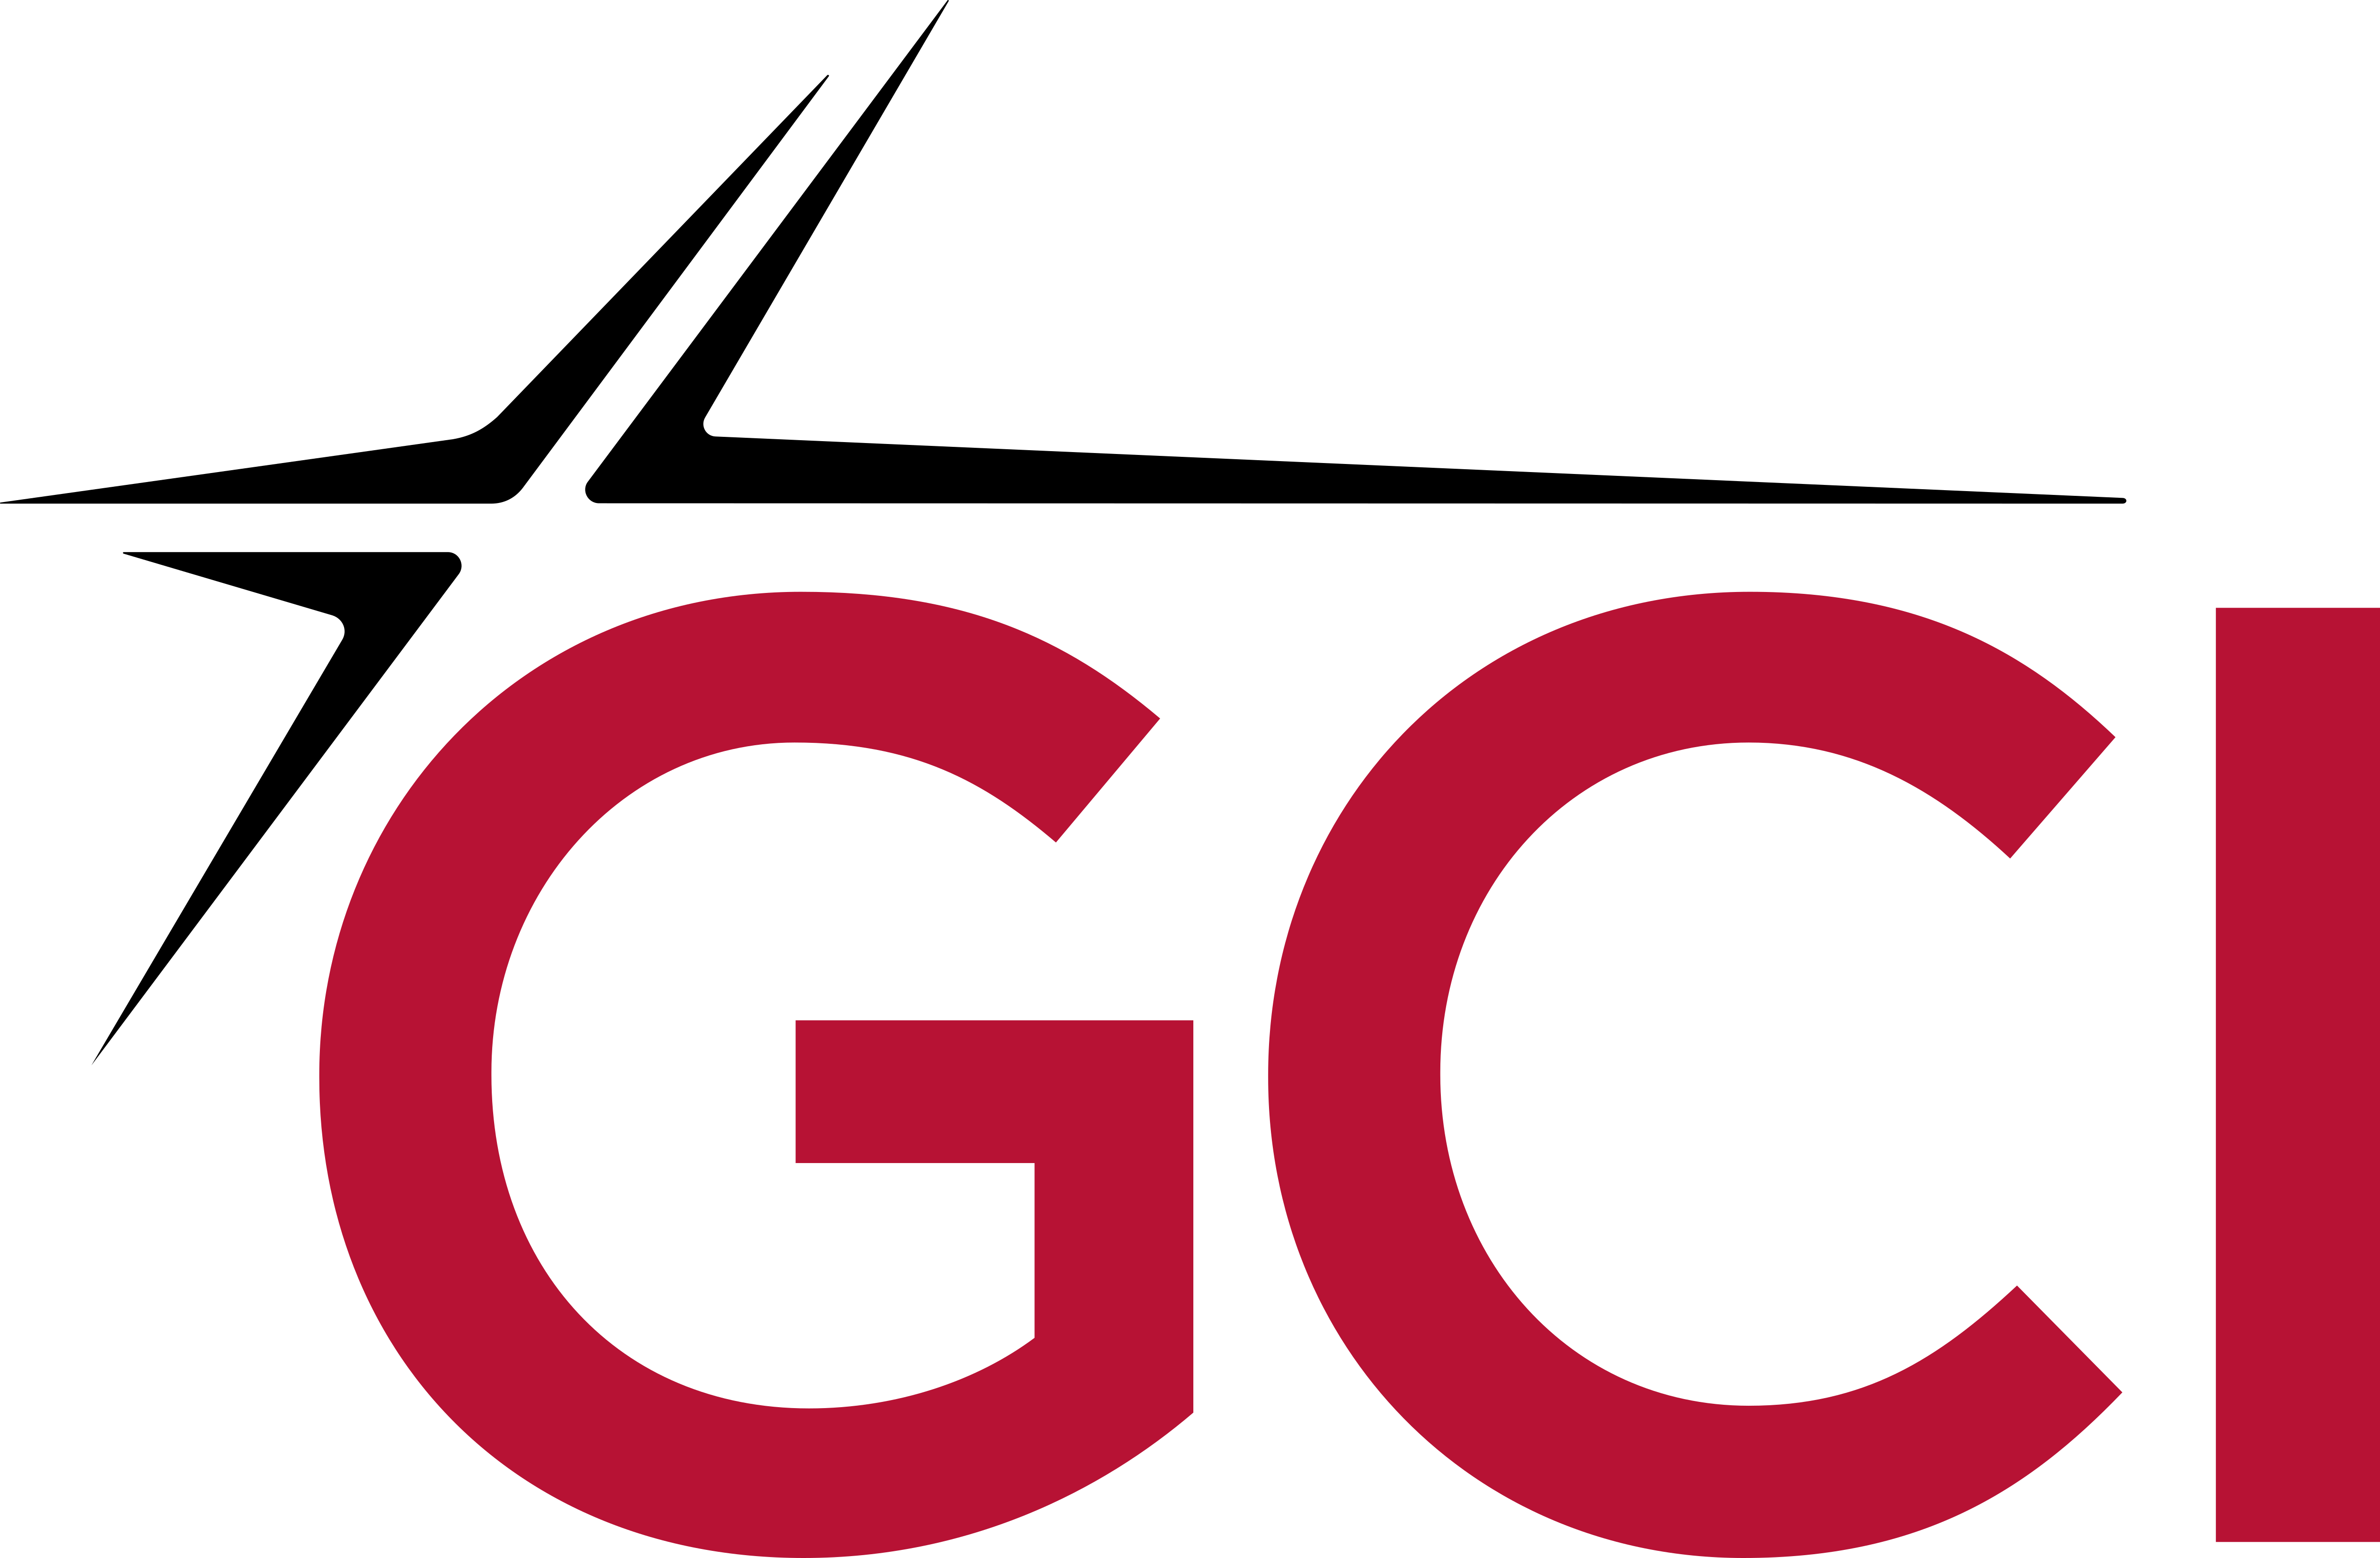 General Communication Inc – Logos Download